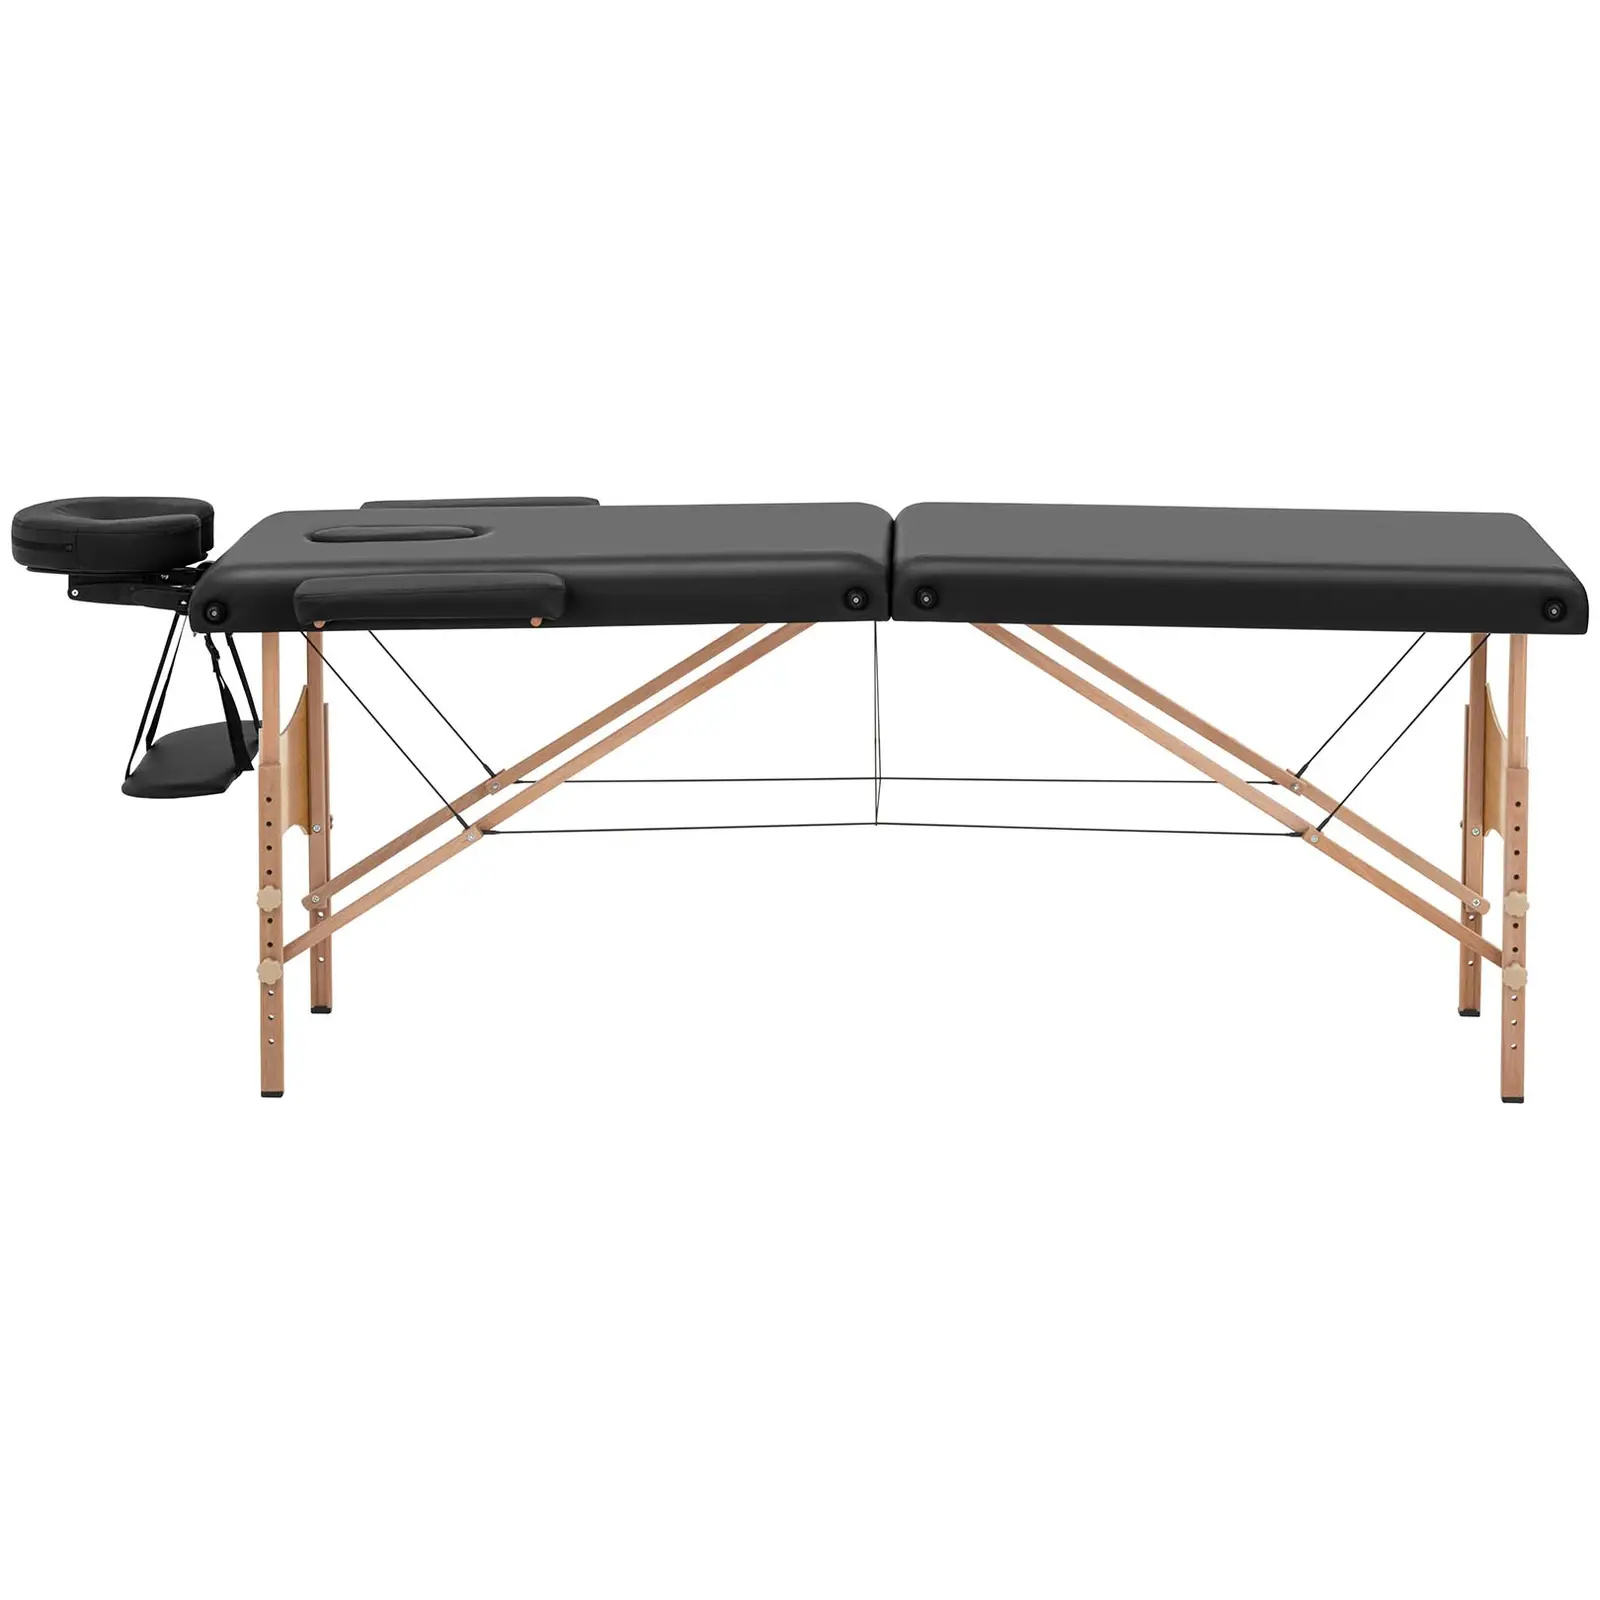 Łóżko do masażu składane - bardzo szerokie (70 cm) - odchylany zagłówek i podnóżek - drewno bukowe - czarne